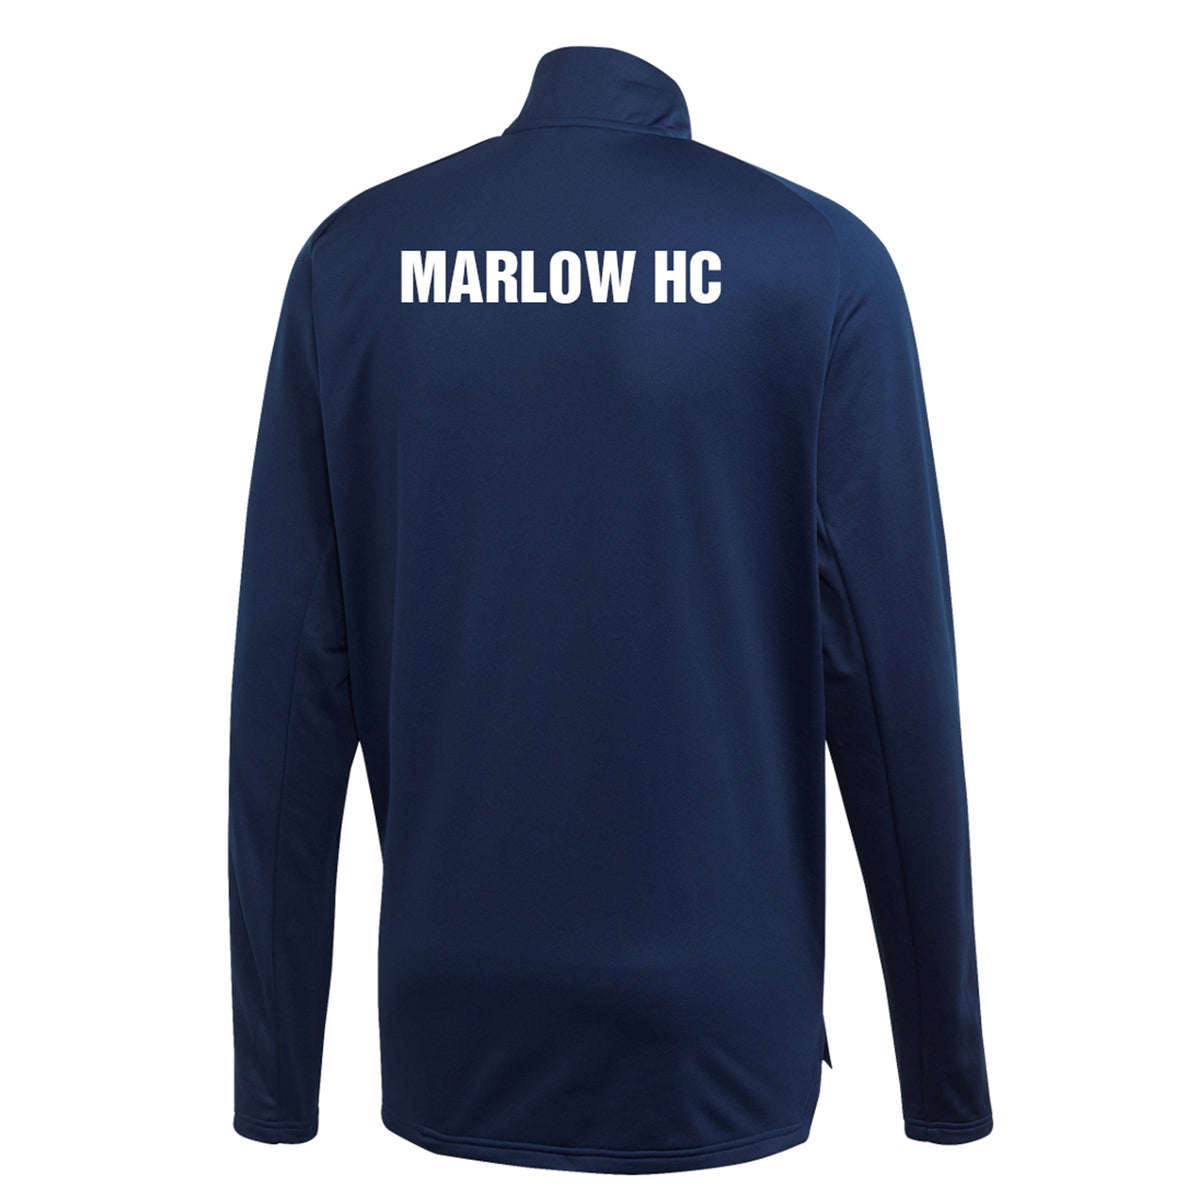 Marlow Hockey Club Adidas Midlayer